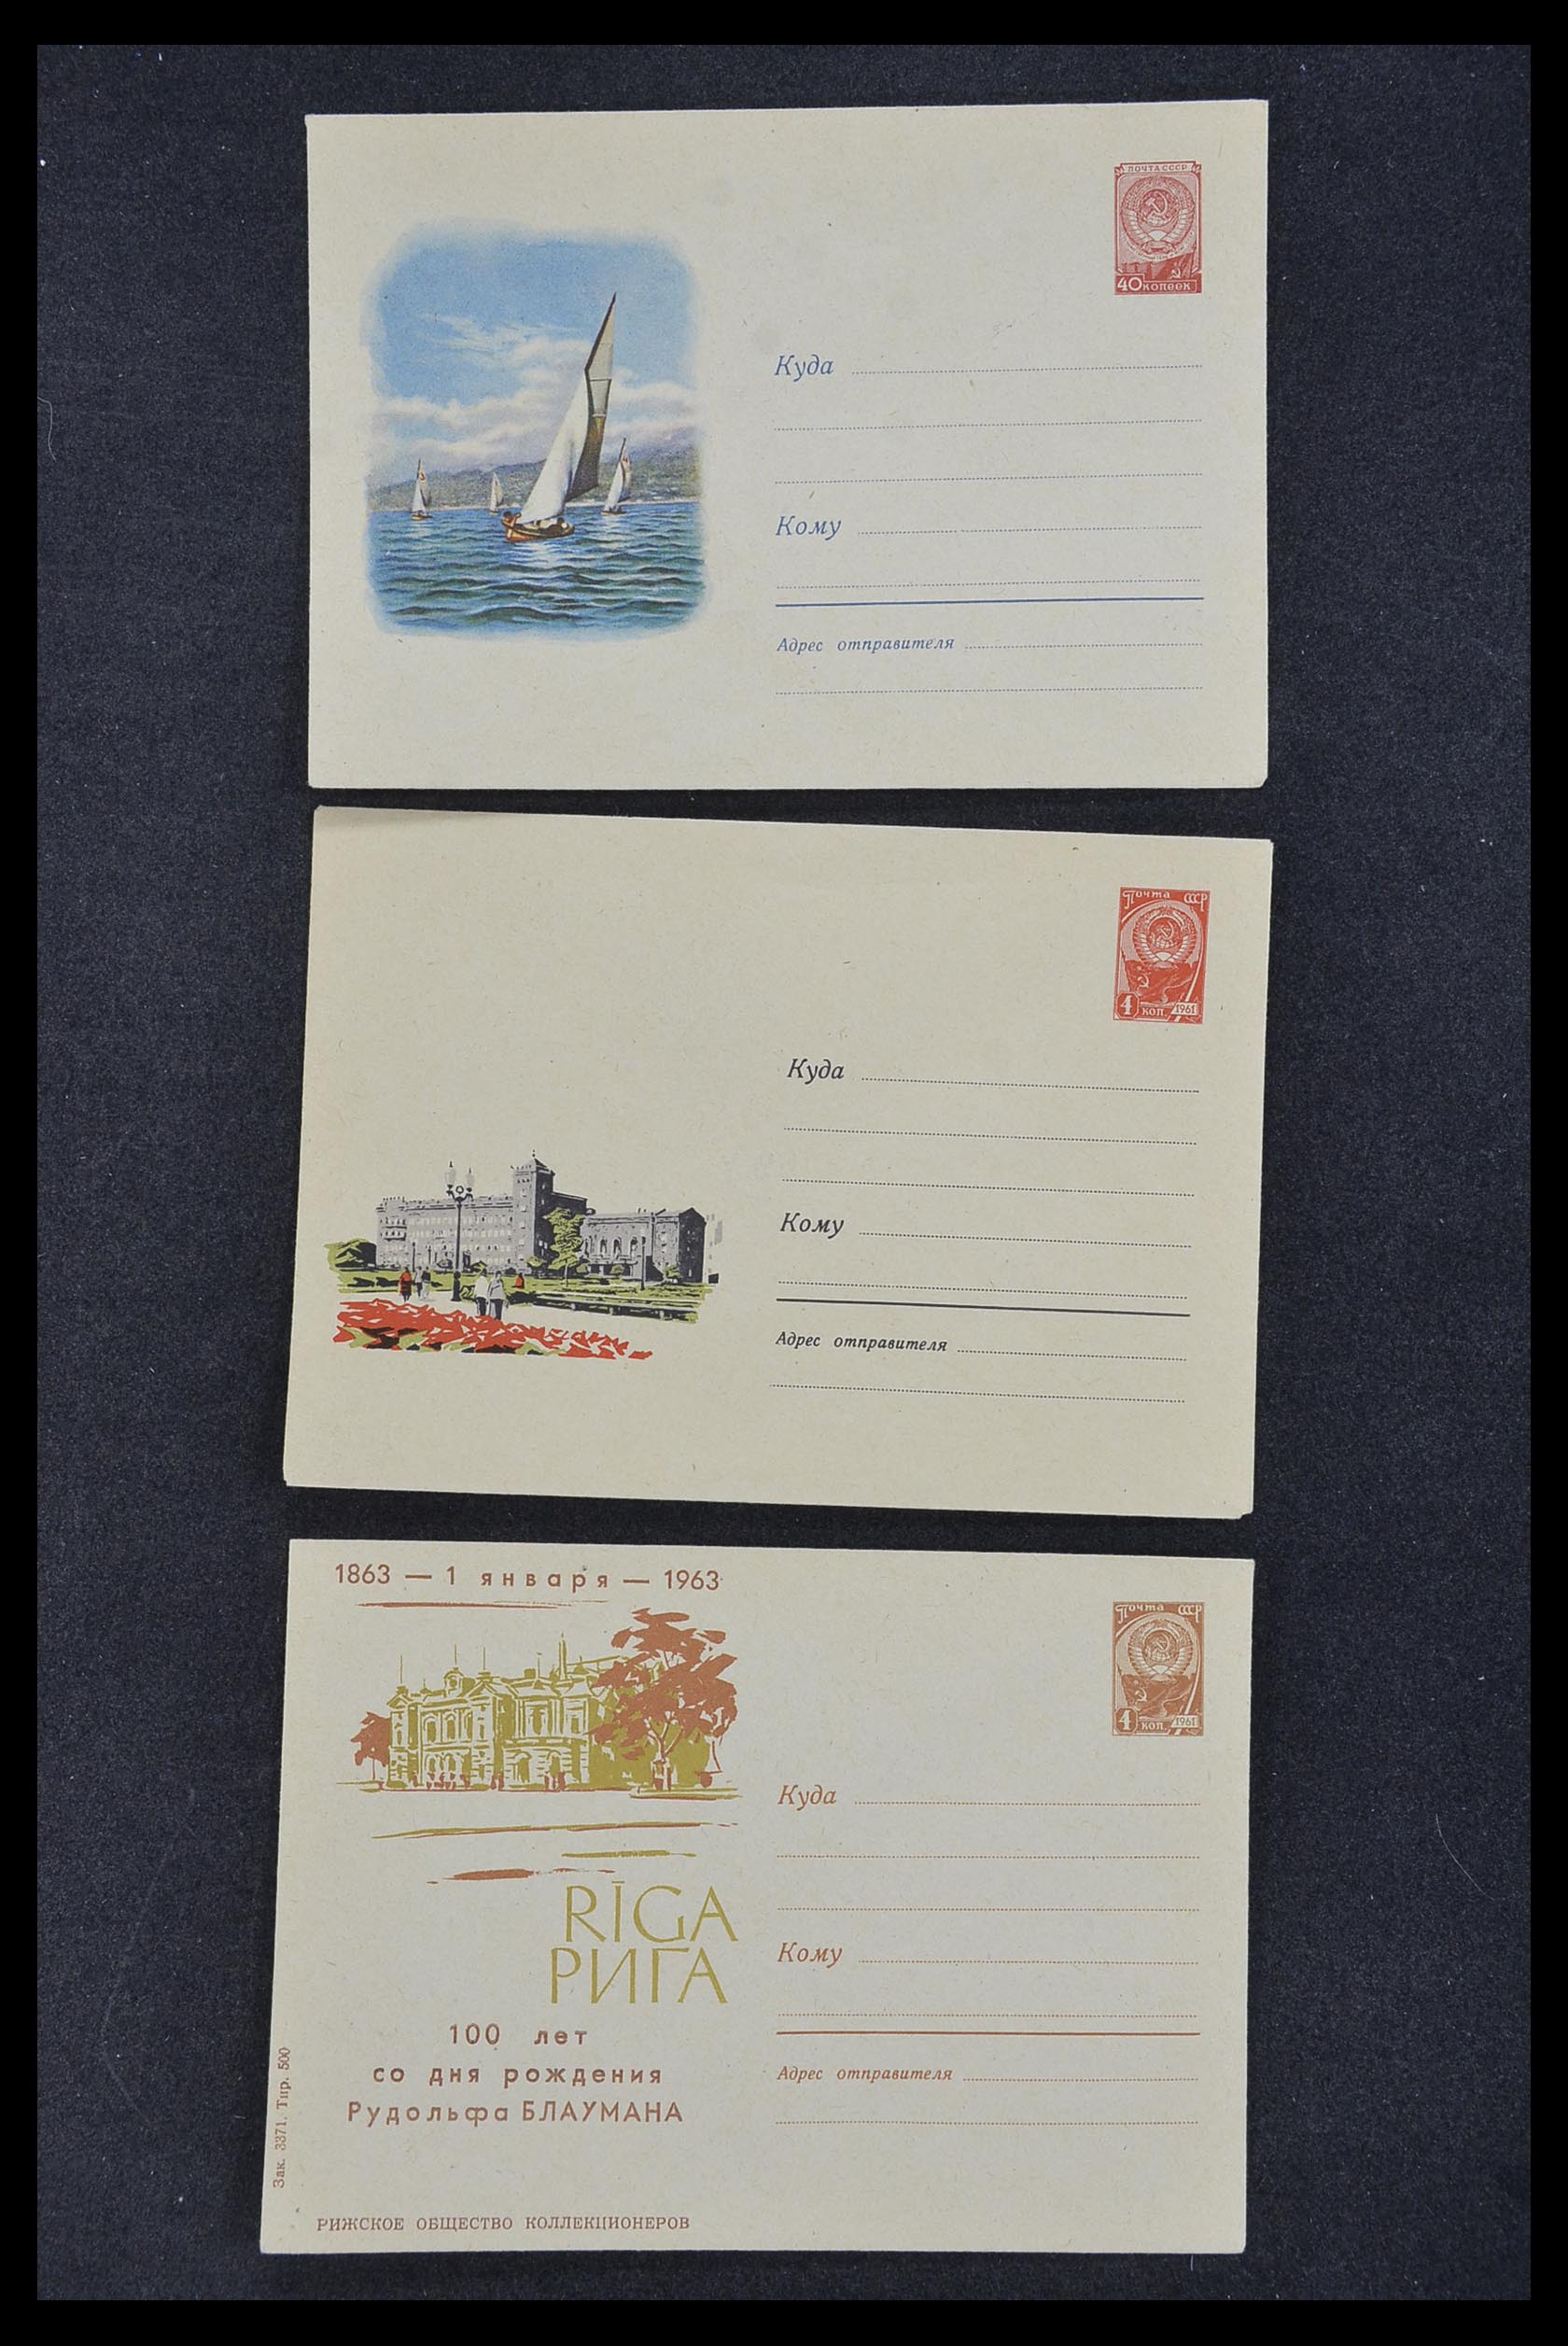 33932 033 - Postzegelverzameling 33932 Rusland postwaaardestukken 1953-1967.